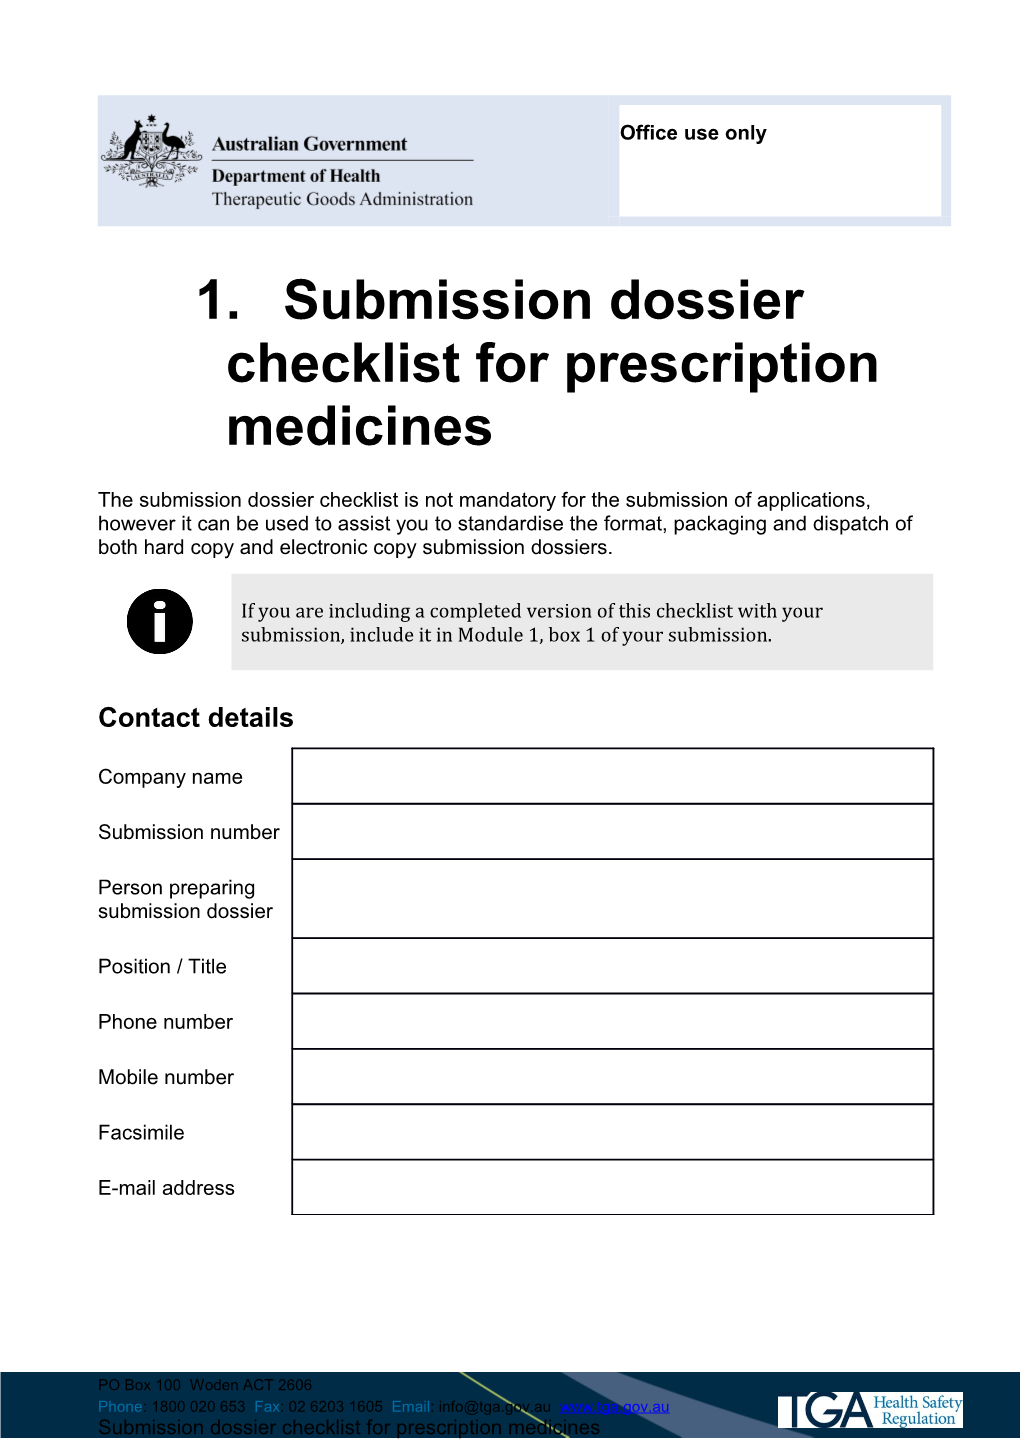 Submission Dossier Checklist for Prescription Medicines